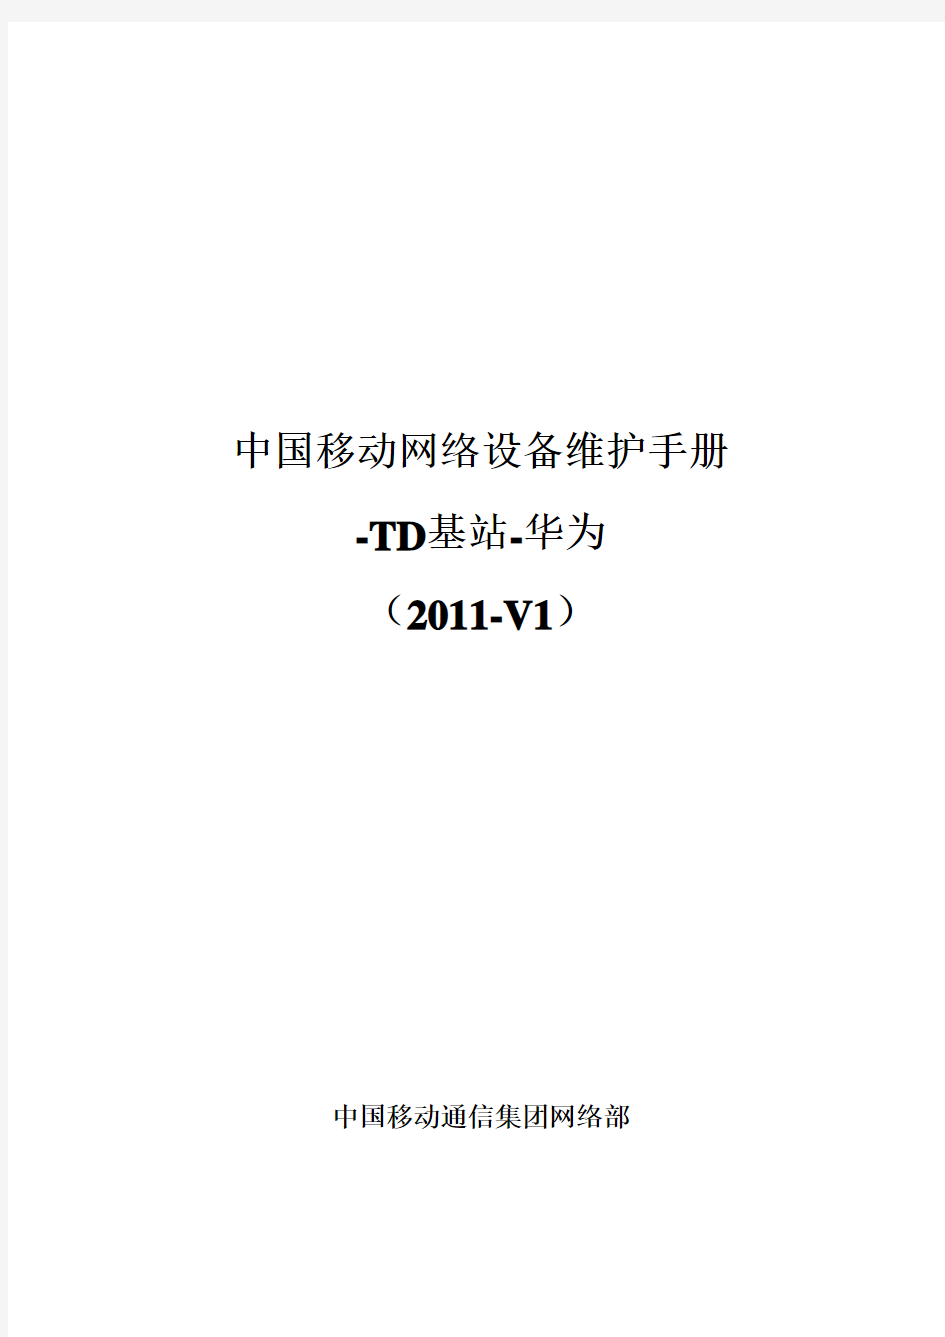 6、中国移动网络设备维护手册-TD基站-华为